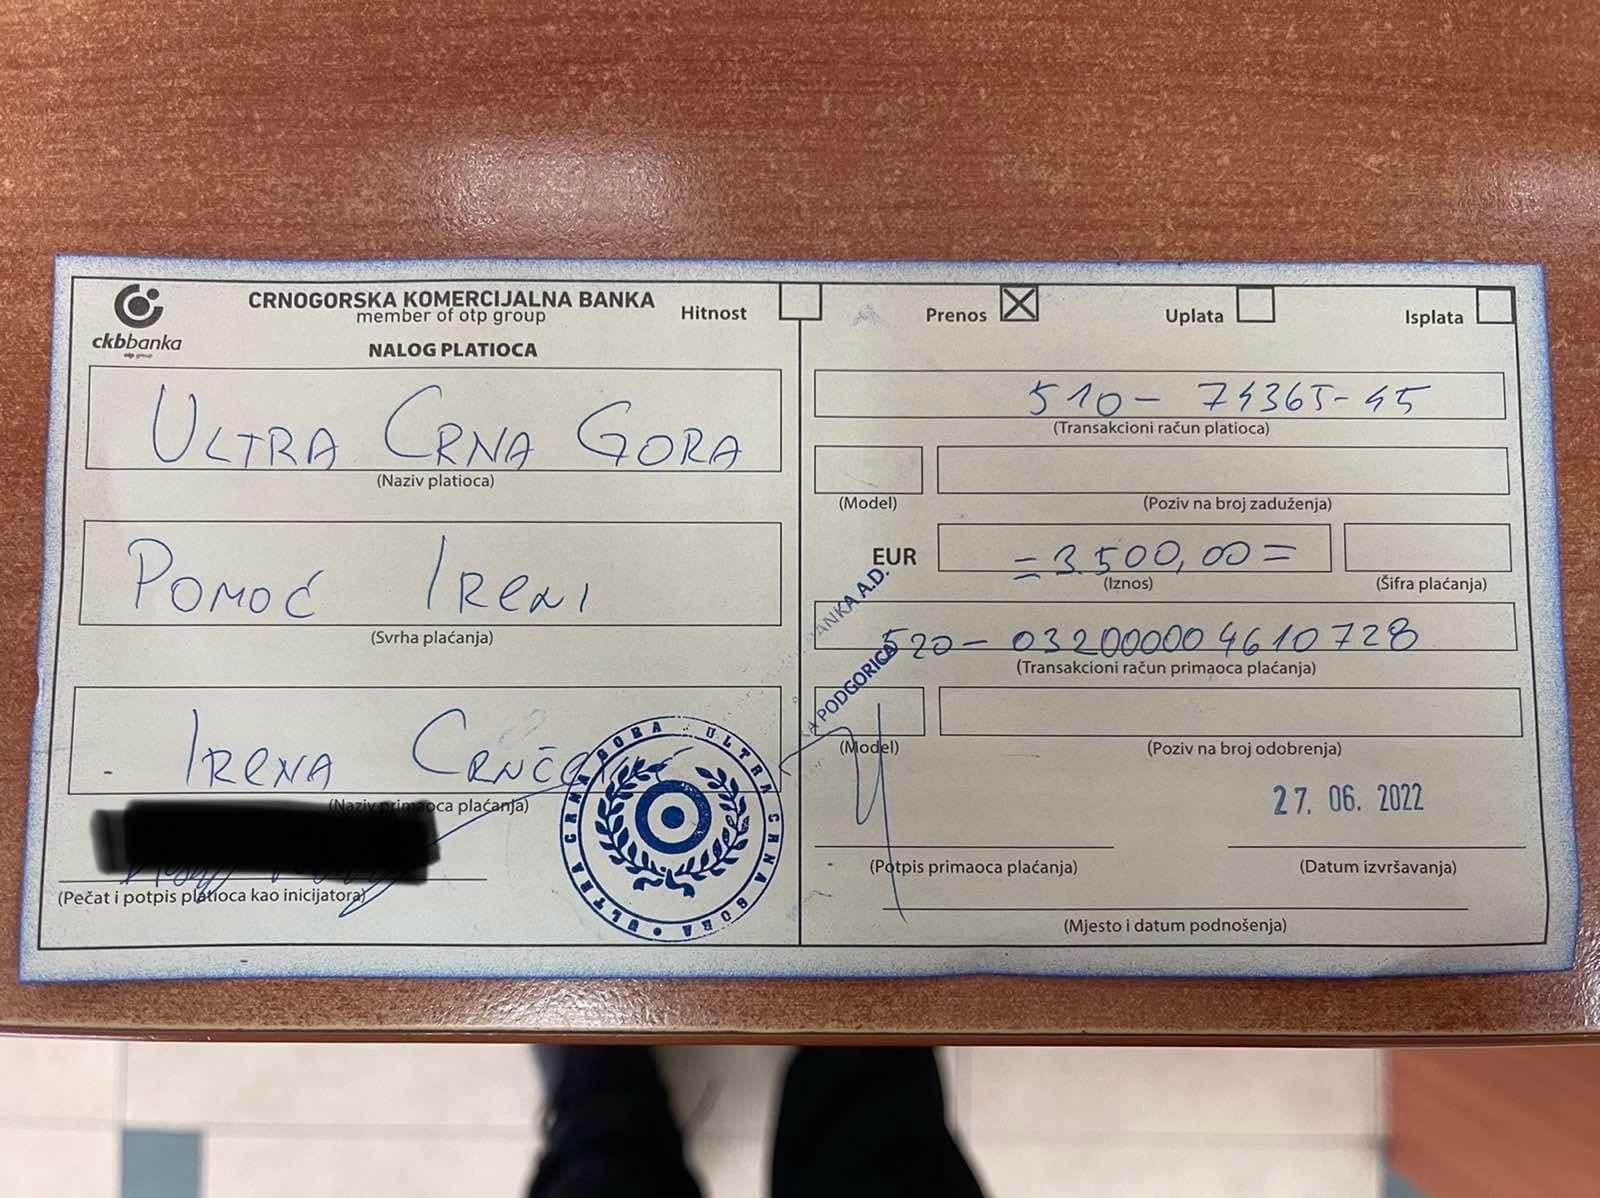 Navijači crnogorske reprezentacije višak sredstava sakupljenih za kupovinu kombija uplatili za liječenje Irene Crnčević